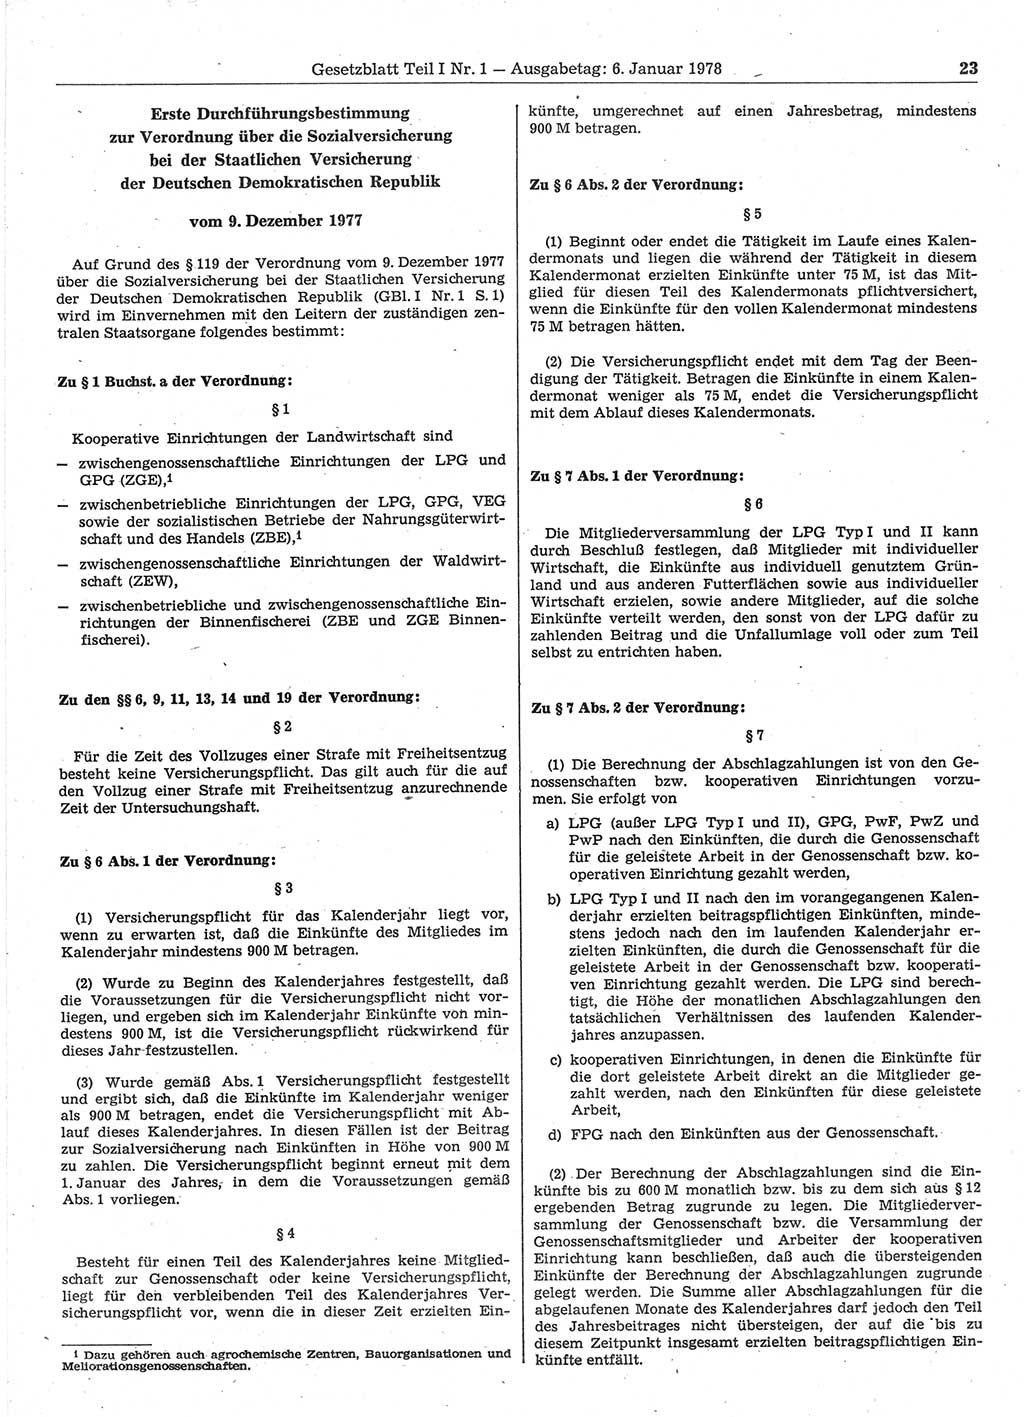 Gesetzblatt (GBl.) der Deutschen Demokratischen Republik (DDR) Teil Ⅰ 1978, Seite 23 (GBl. DDR Ⅰ 1978, S. 23)